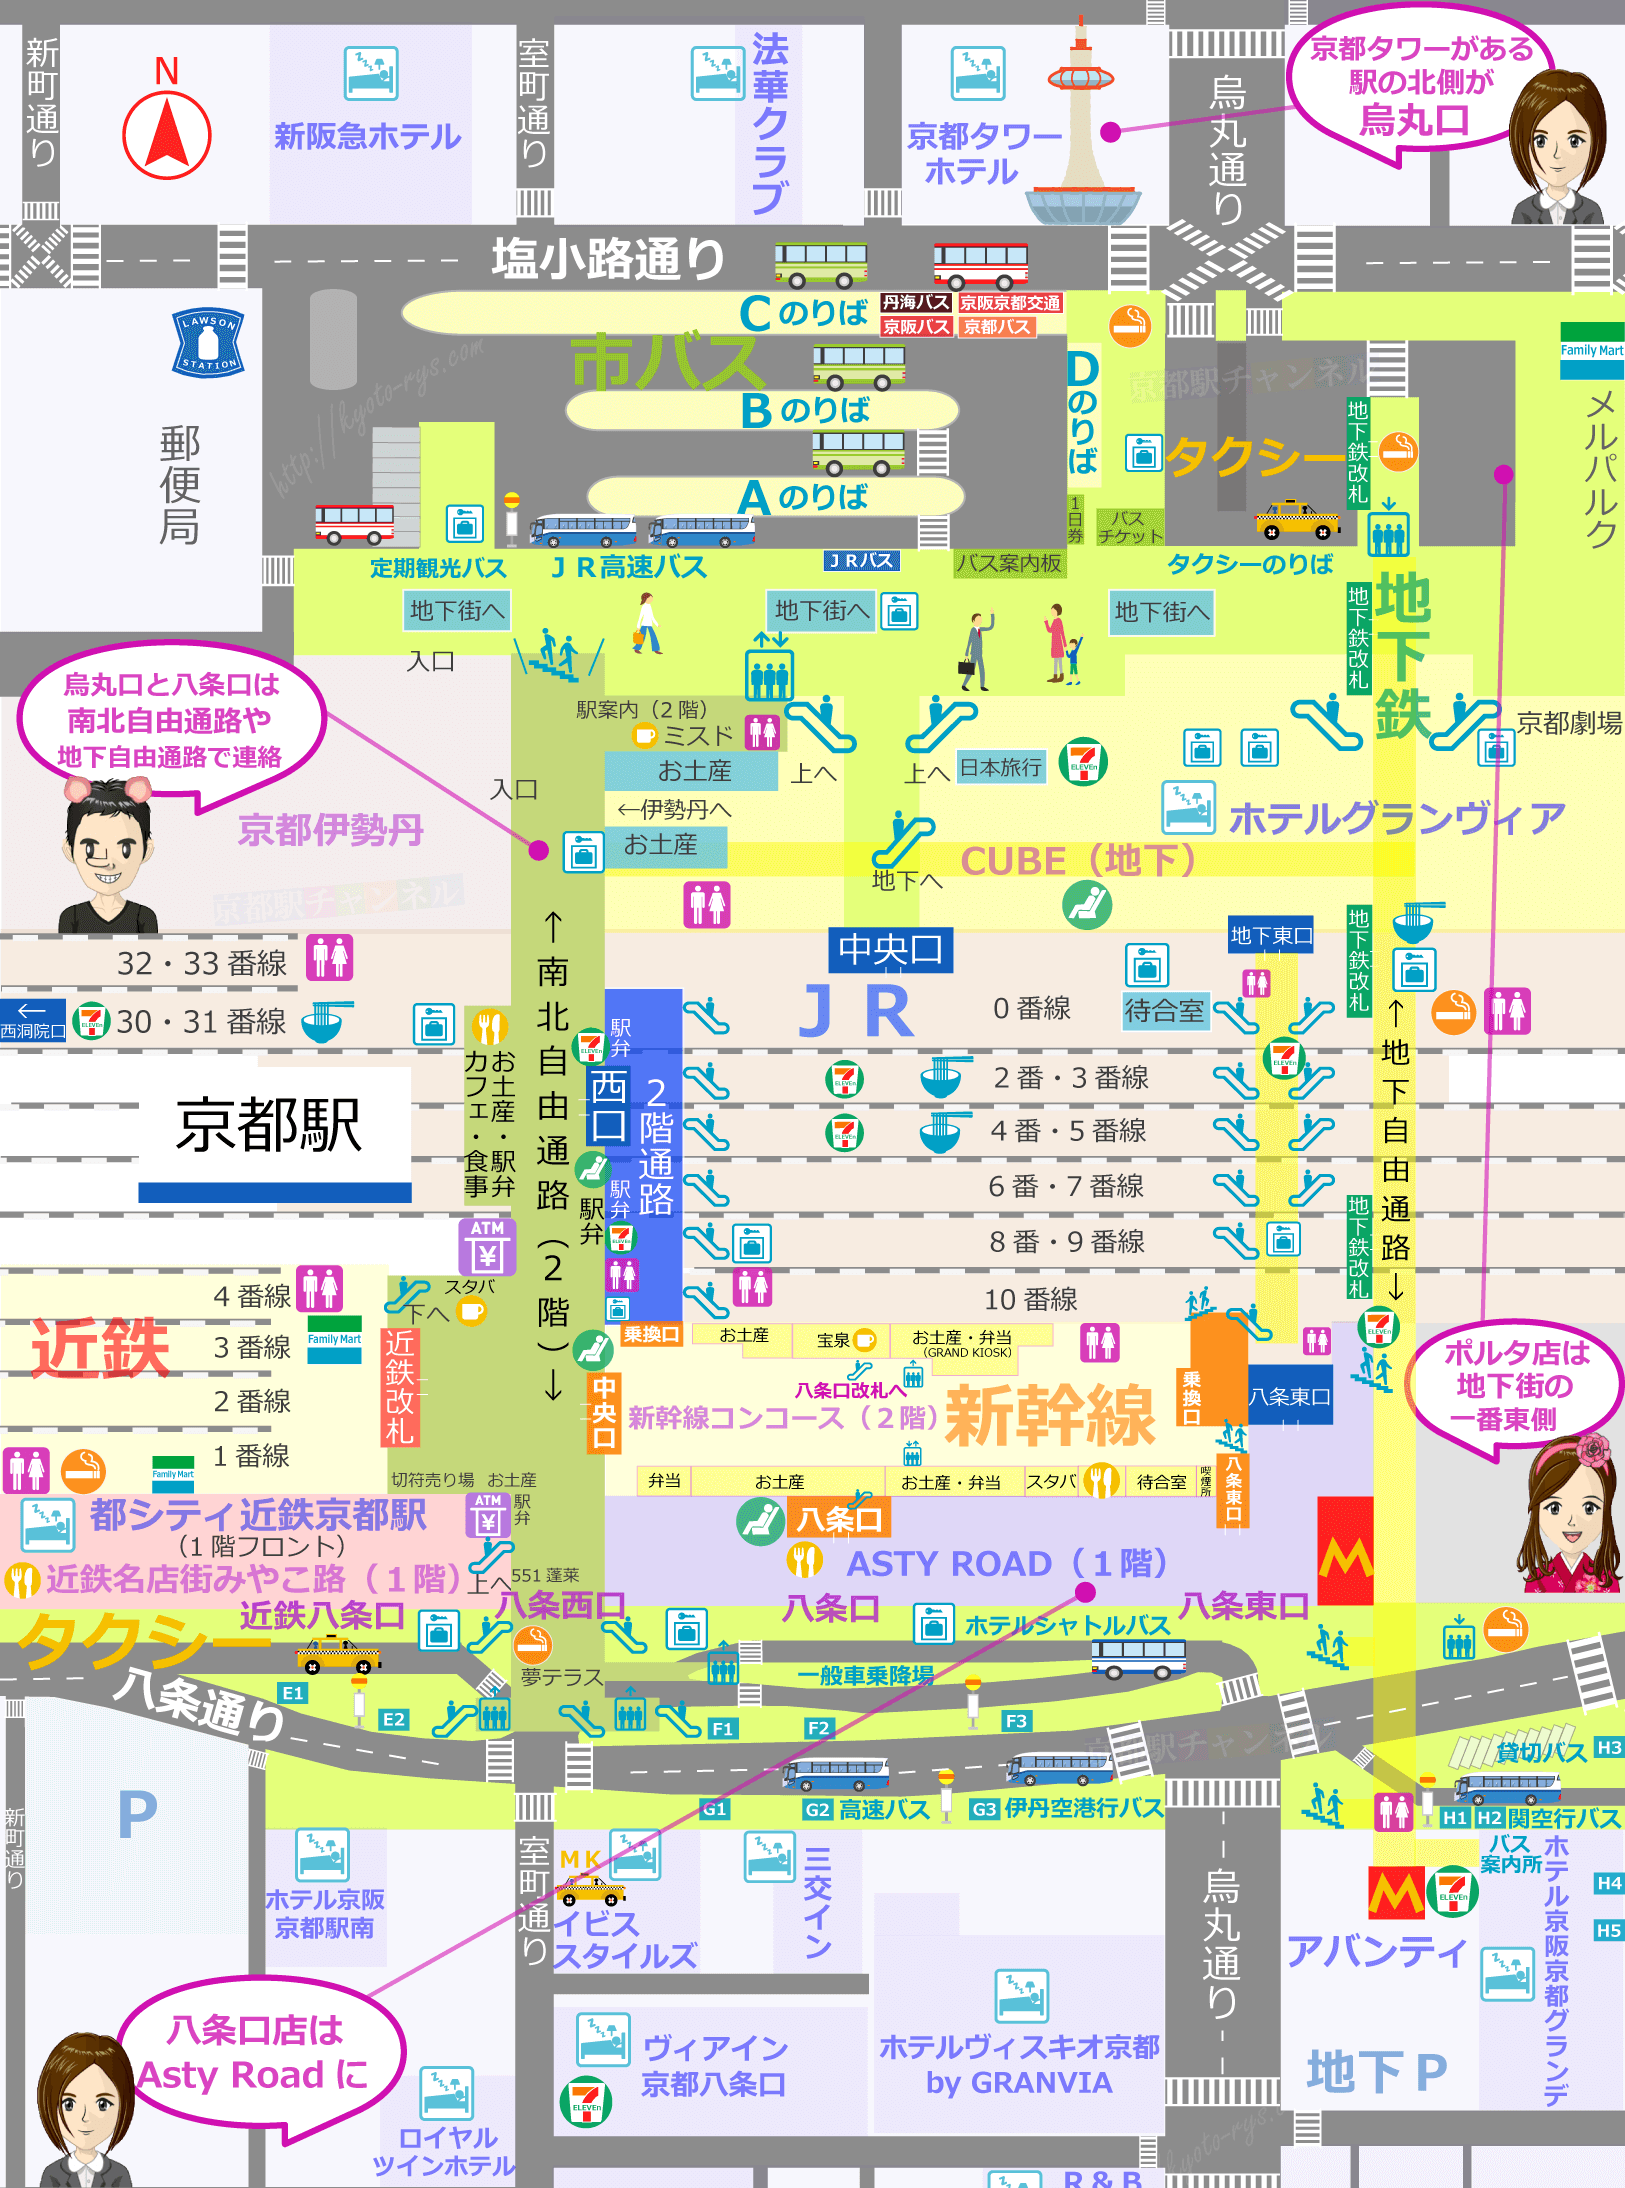 京都駅の構内図とイノダコーヒのマップ